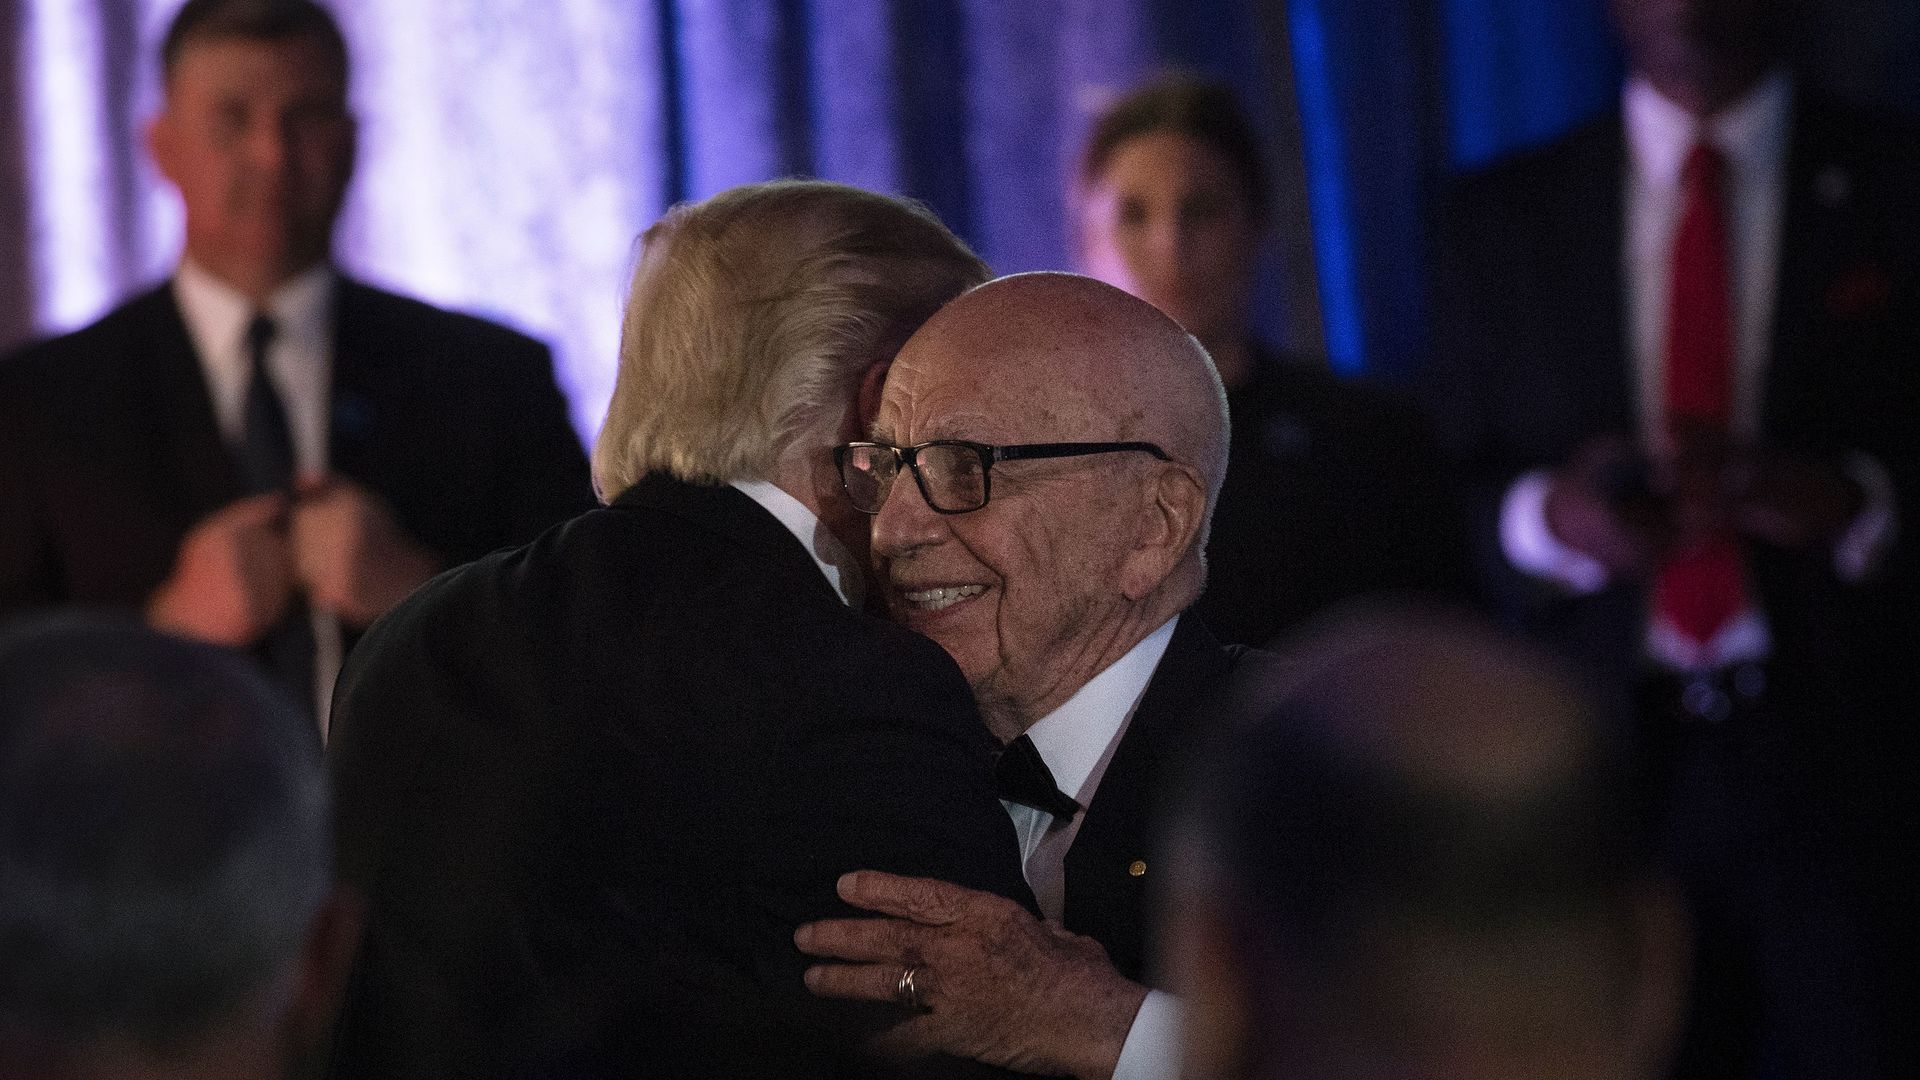 President Trump embraces Rupert Murdoch